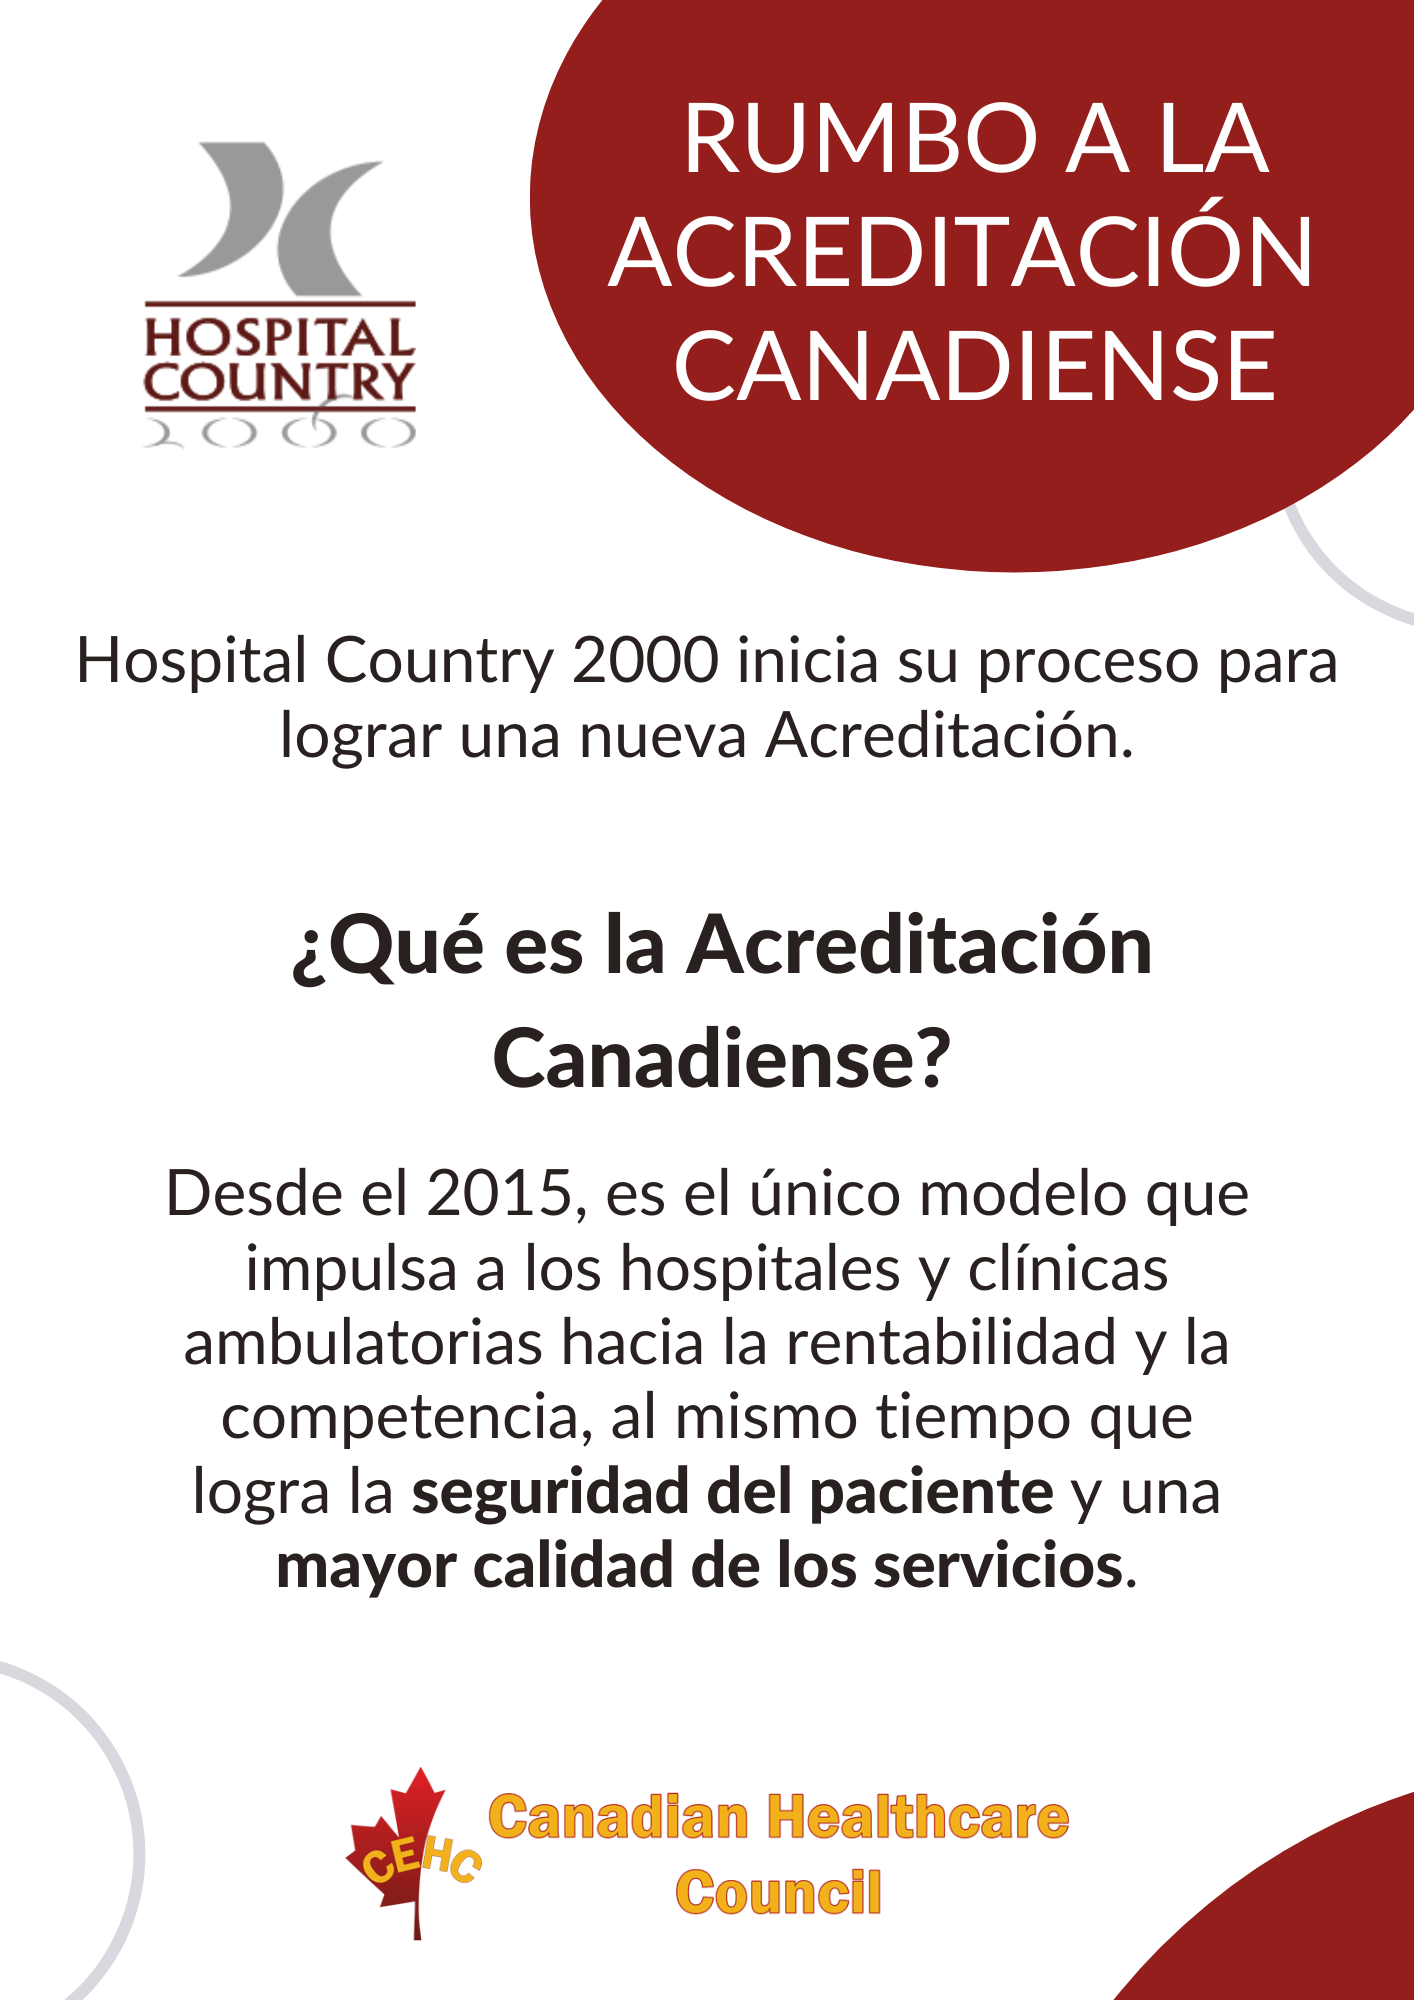 Hospital Country 2000 rumbo a la acreditación Canadiense